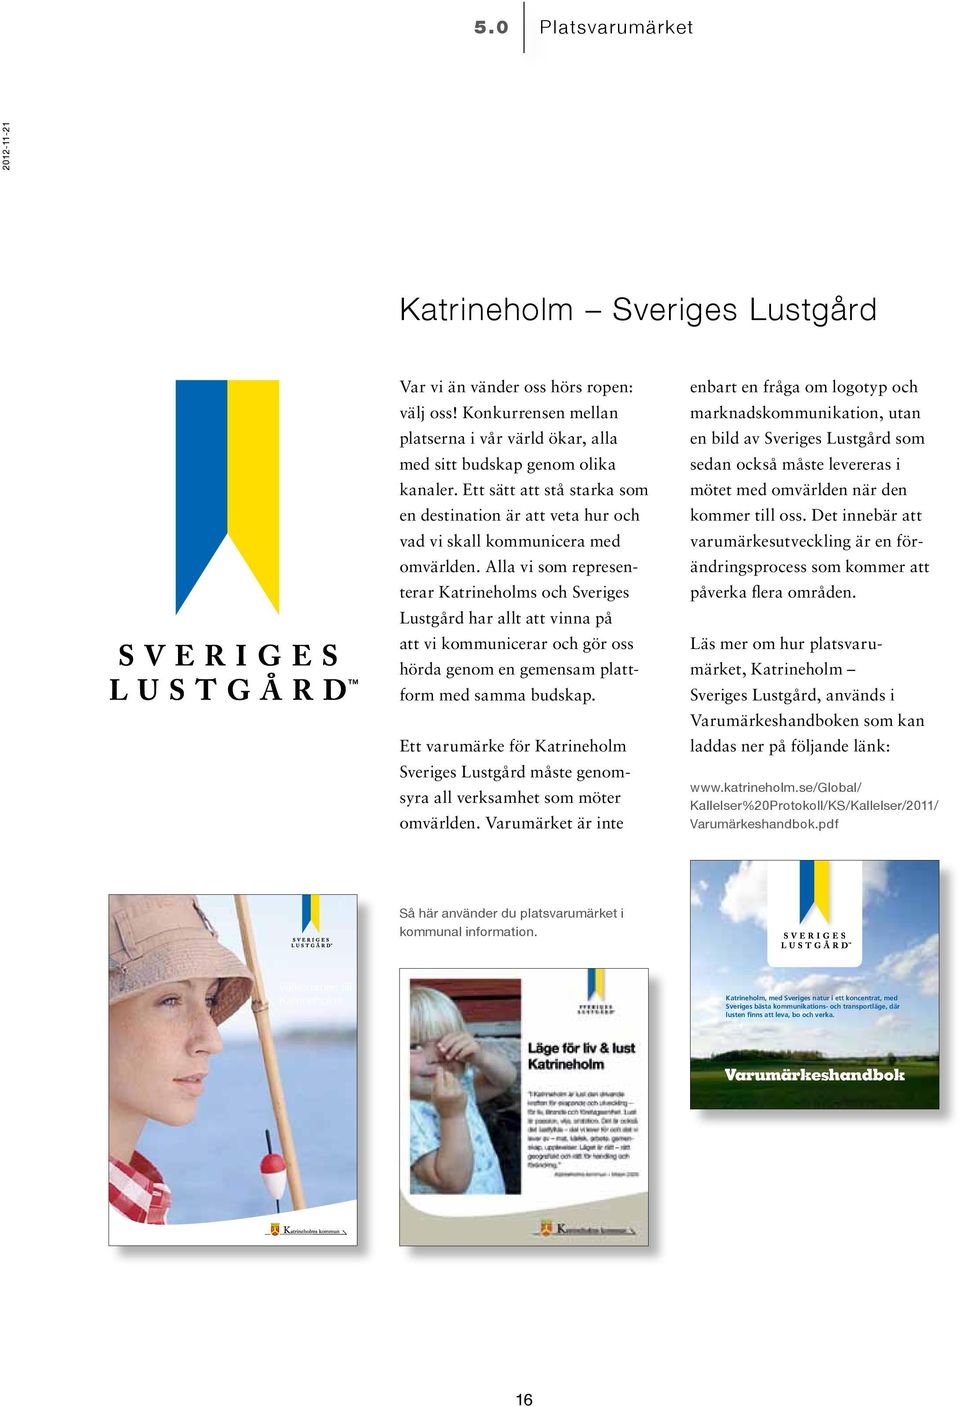 Alla vi som representerar Katrineholms och Sveriges Lustgård har allt att vinna på att vi kommunicerar och gör oss hörda genom en gemensam plattform med samma budskap.